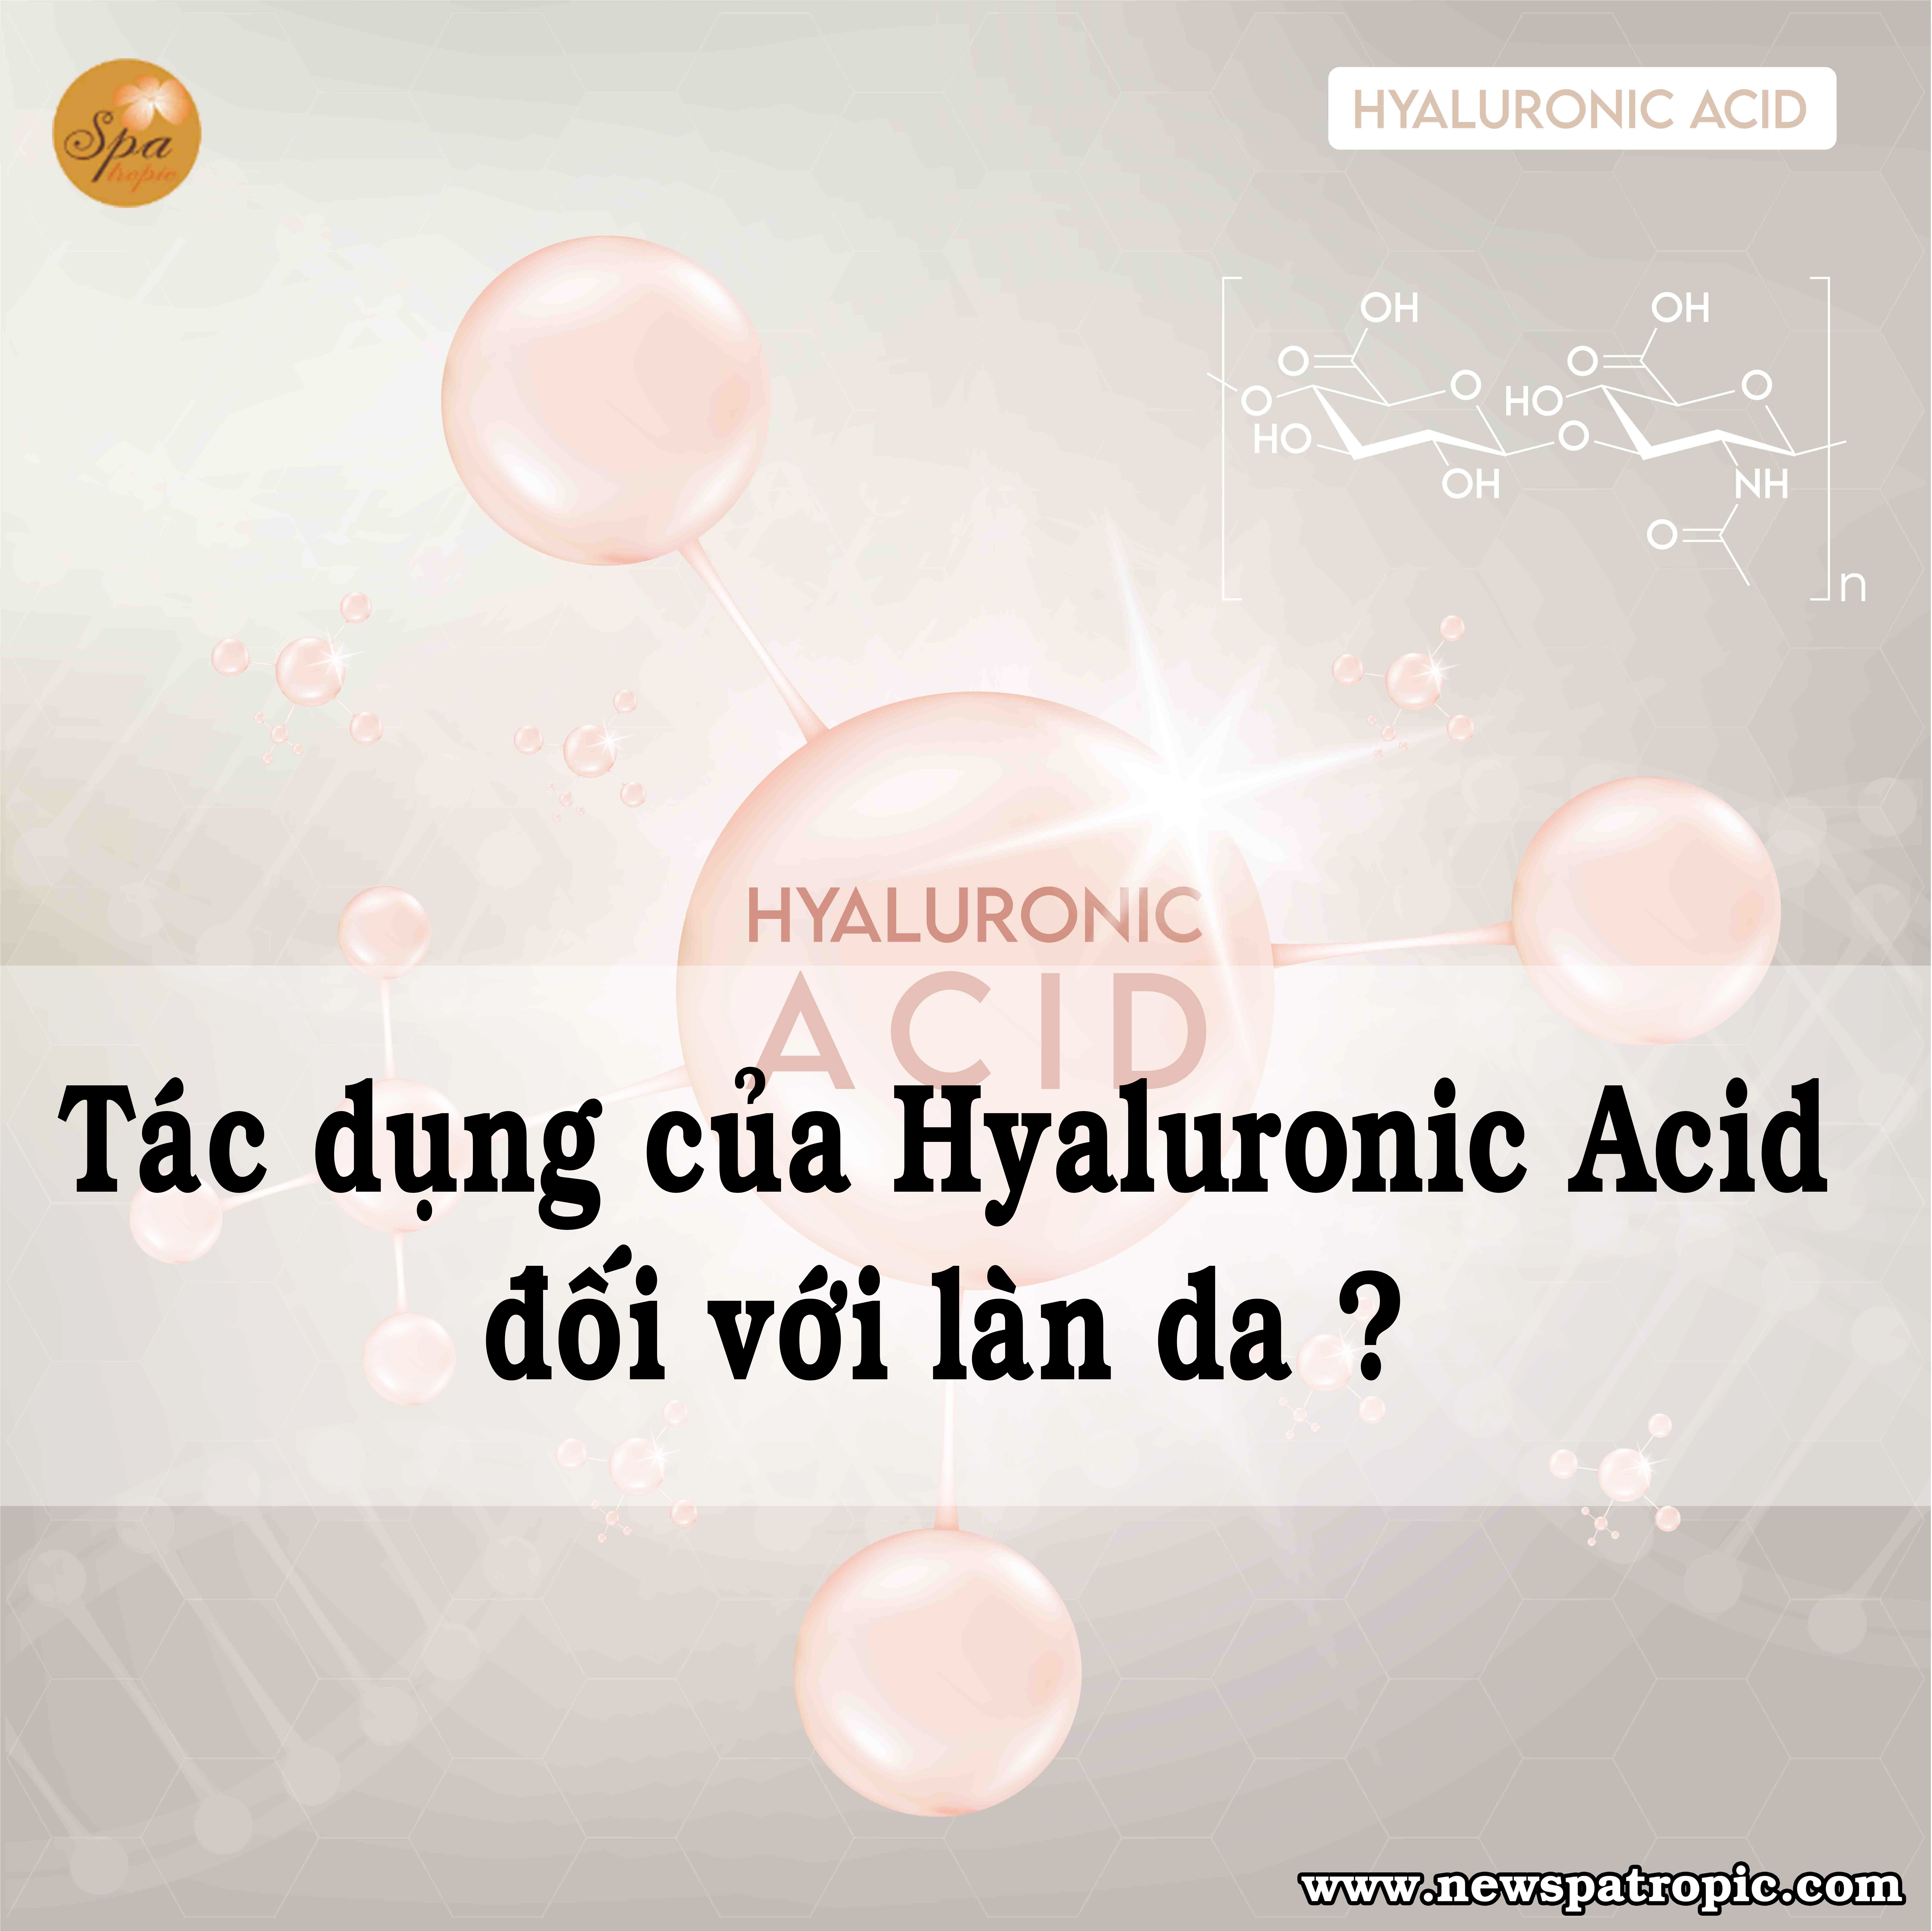 Tác dụng của Hyaluronic Acid đối với làn da